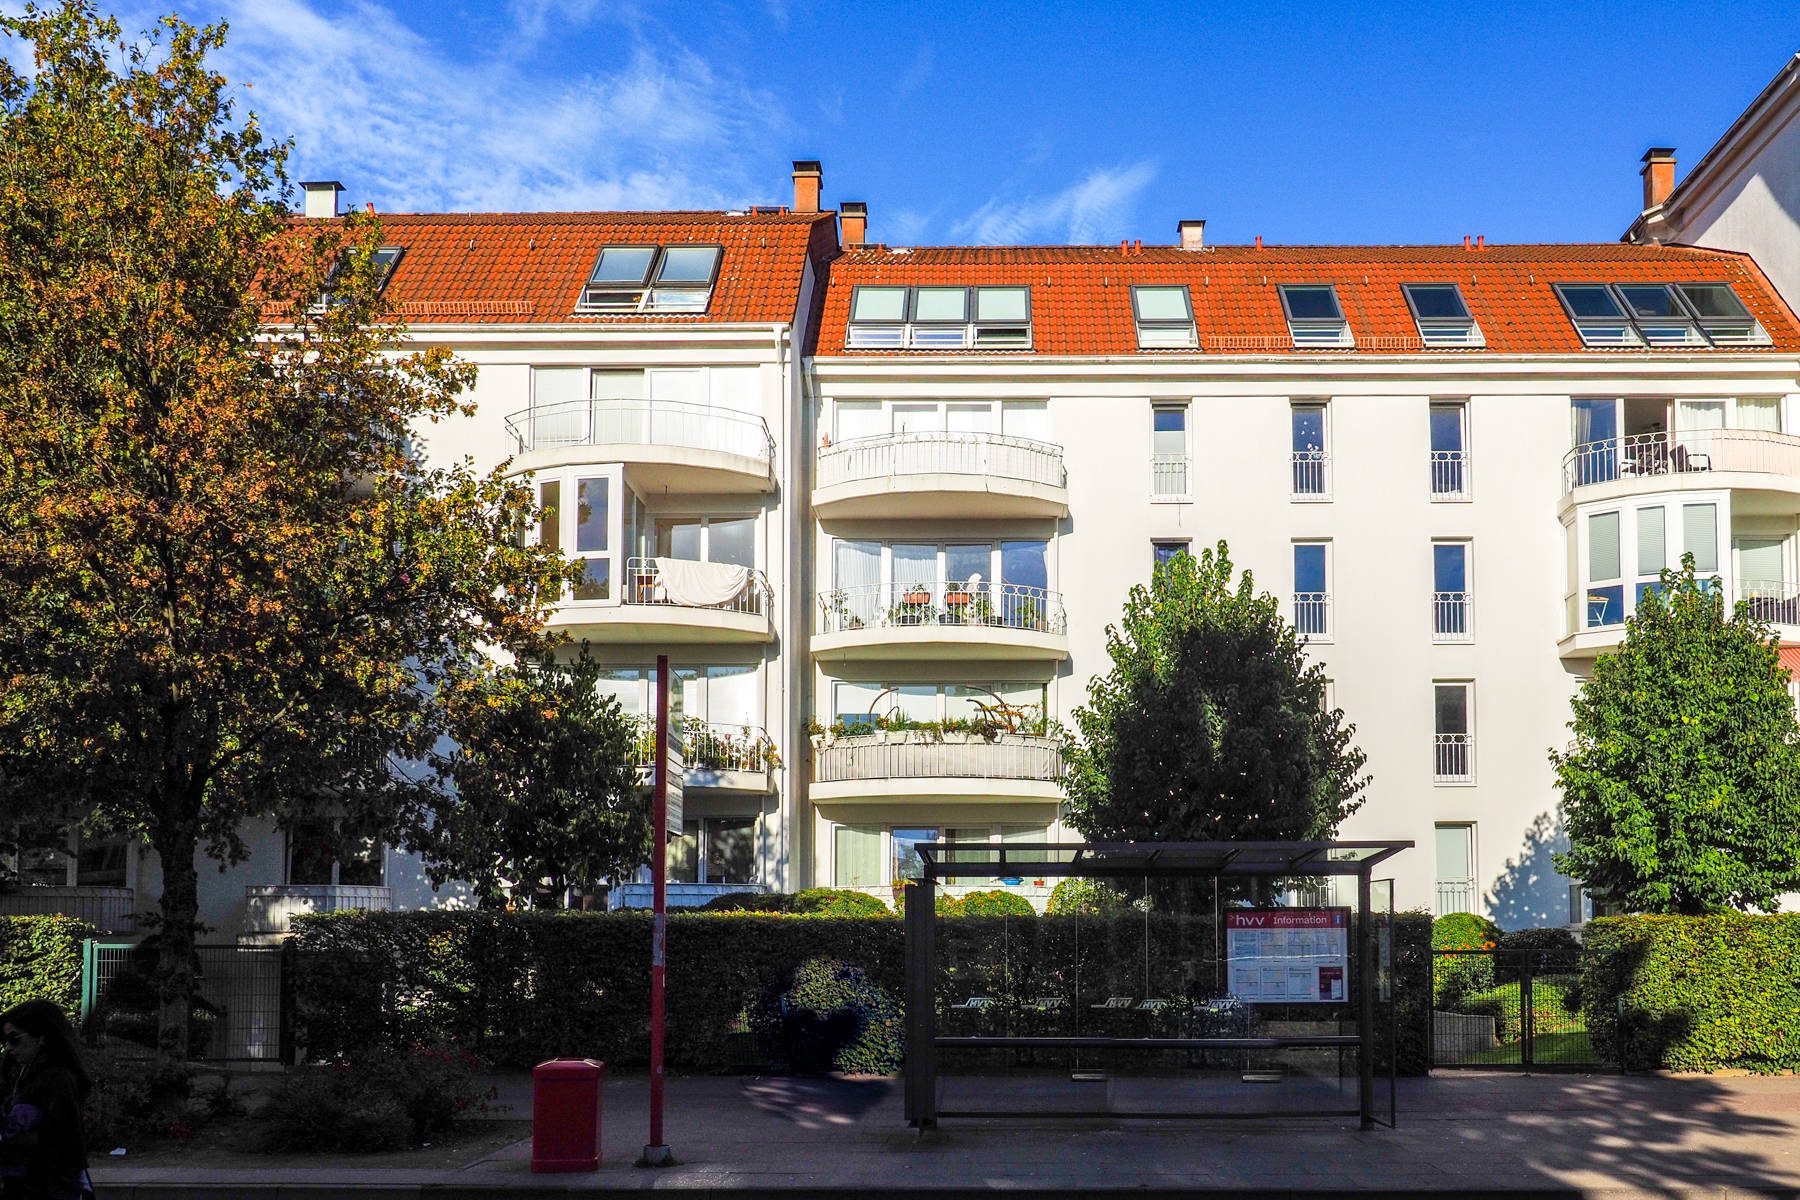 Immobilienangebot - Hamburg Jenfeld - Alle - HH-Jenfeld: Großzügige, komfortable 3-Zimmer-Wohnung mit Balkon und Tiefgarage, barrierefrei